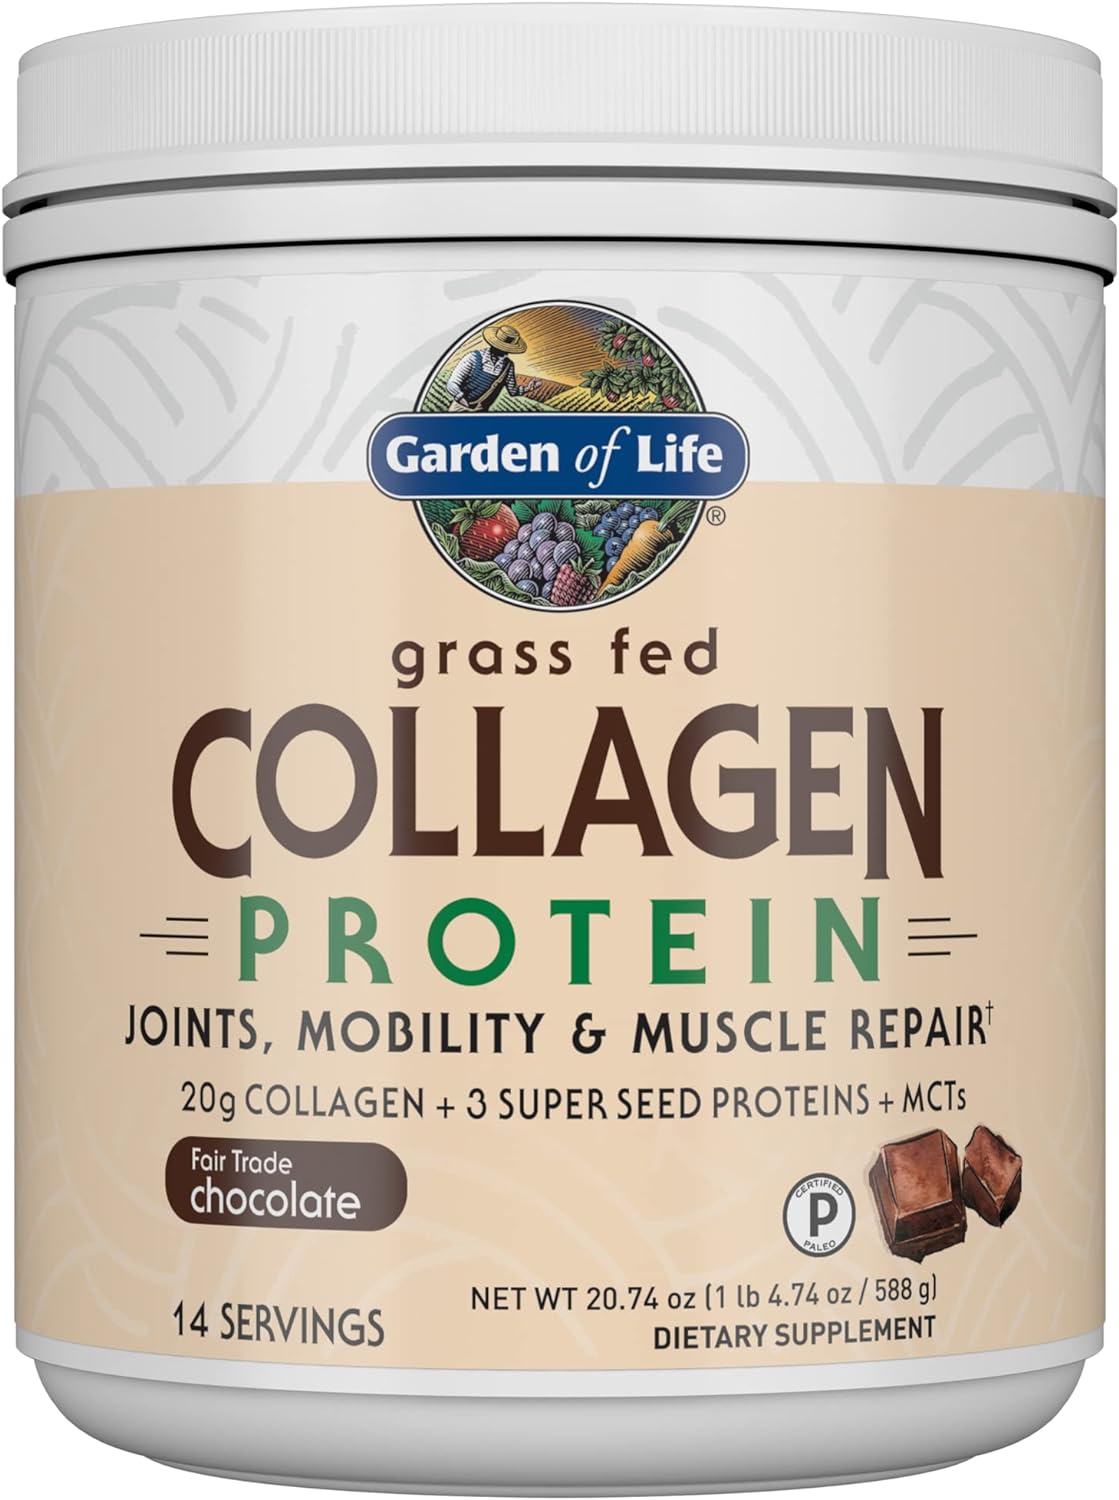 Garden of Life Grass Fed Collagen Protein Powder - Chocolate, 14 Servi